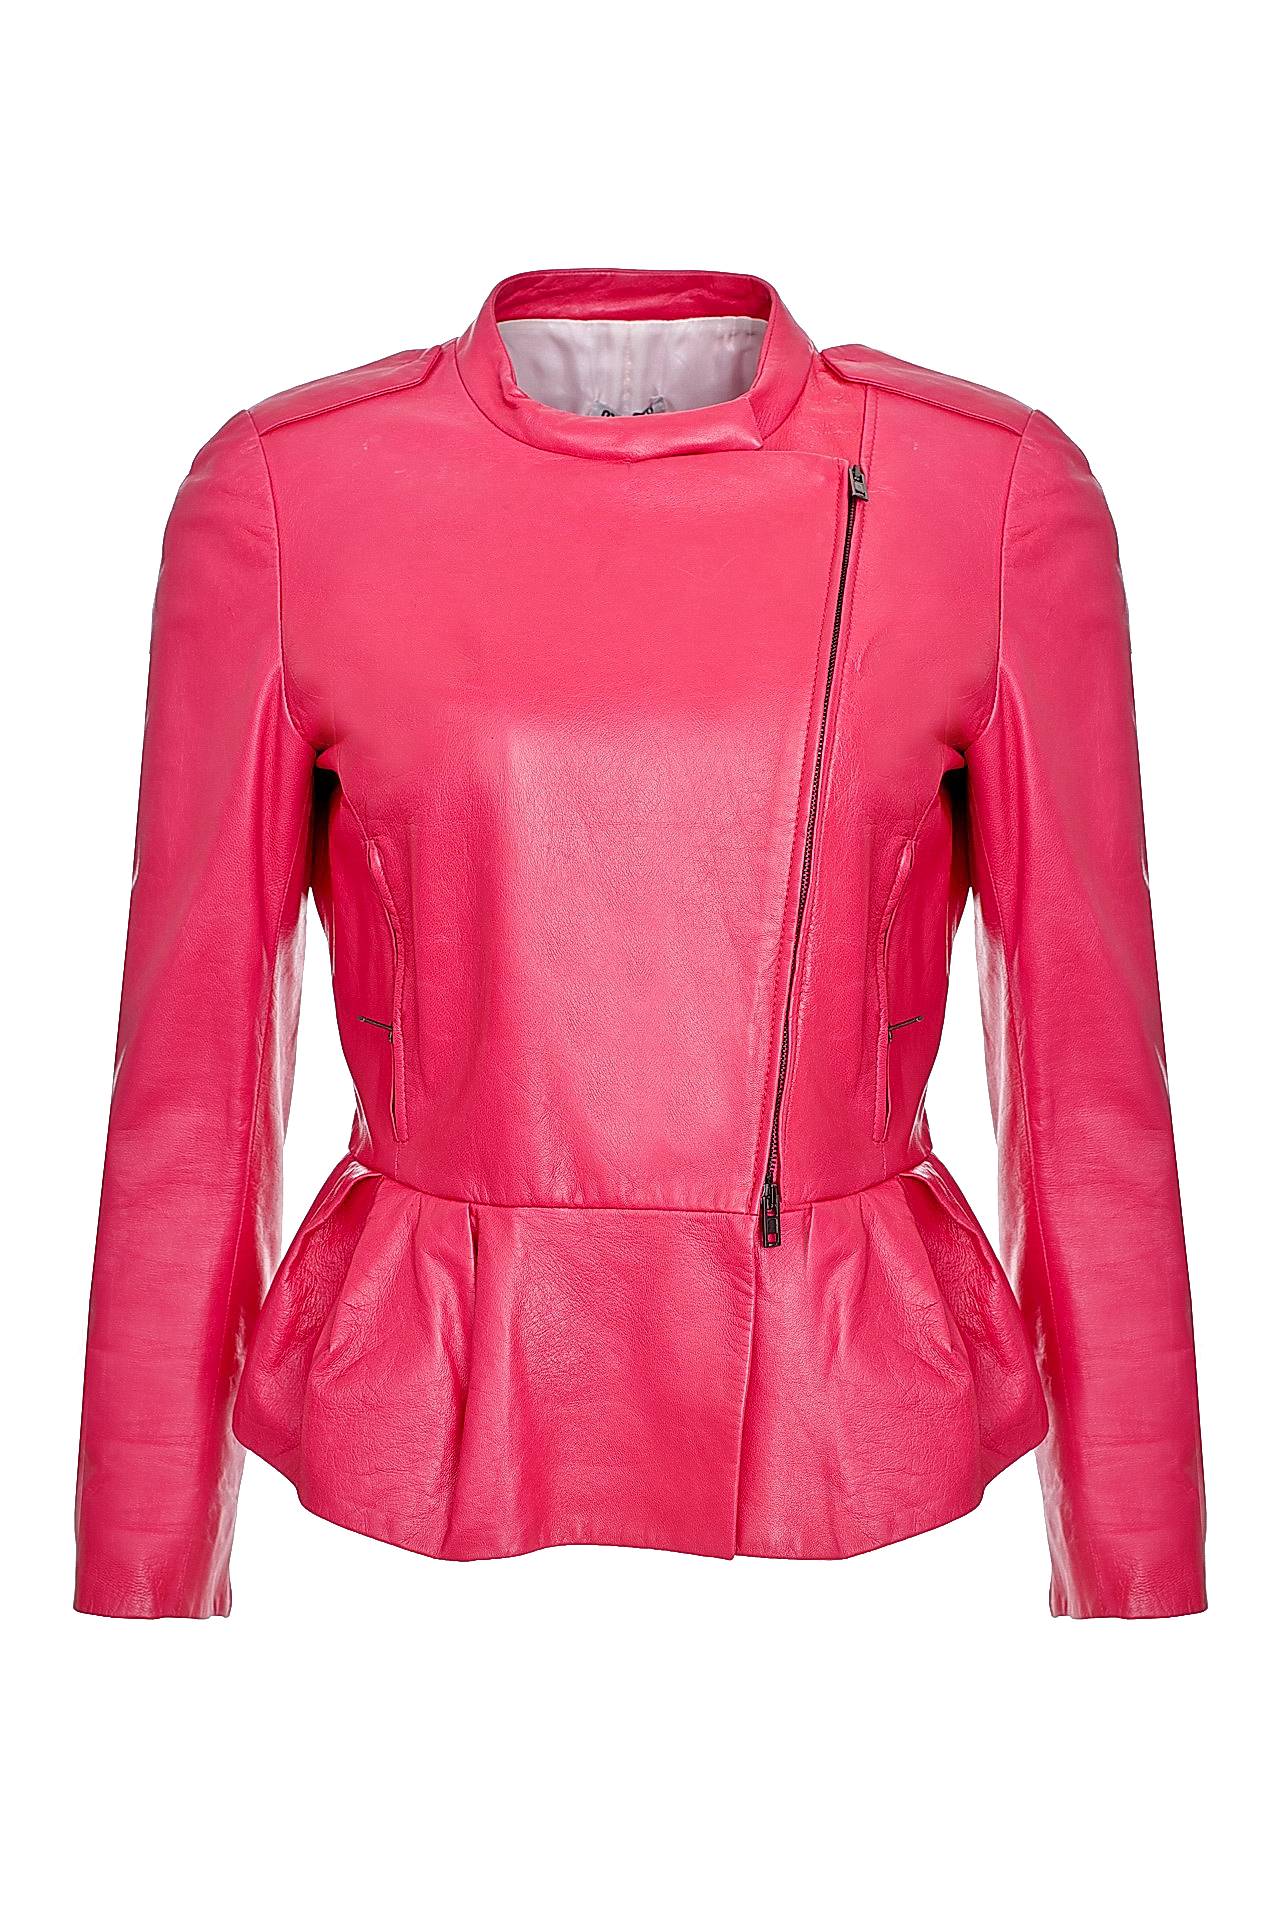 Одежда женская Куртка MIU MIU (MPV423/13.1). Купить за 87500 руб.